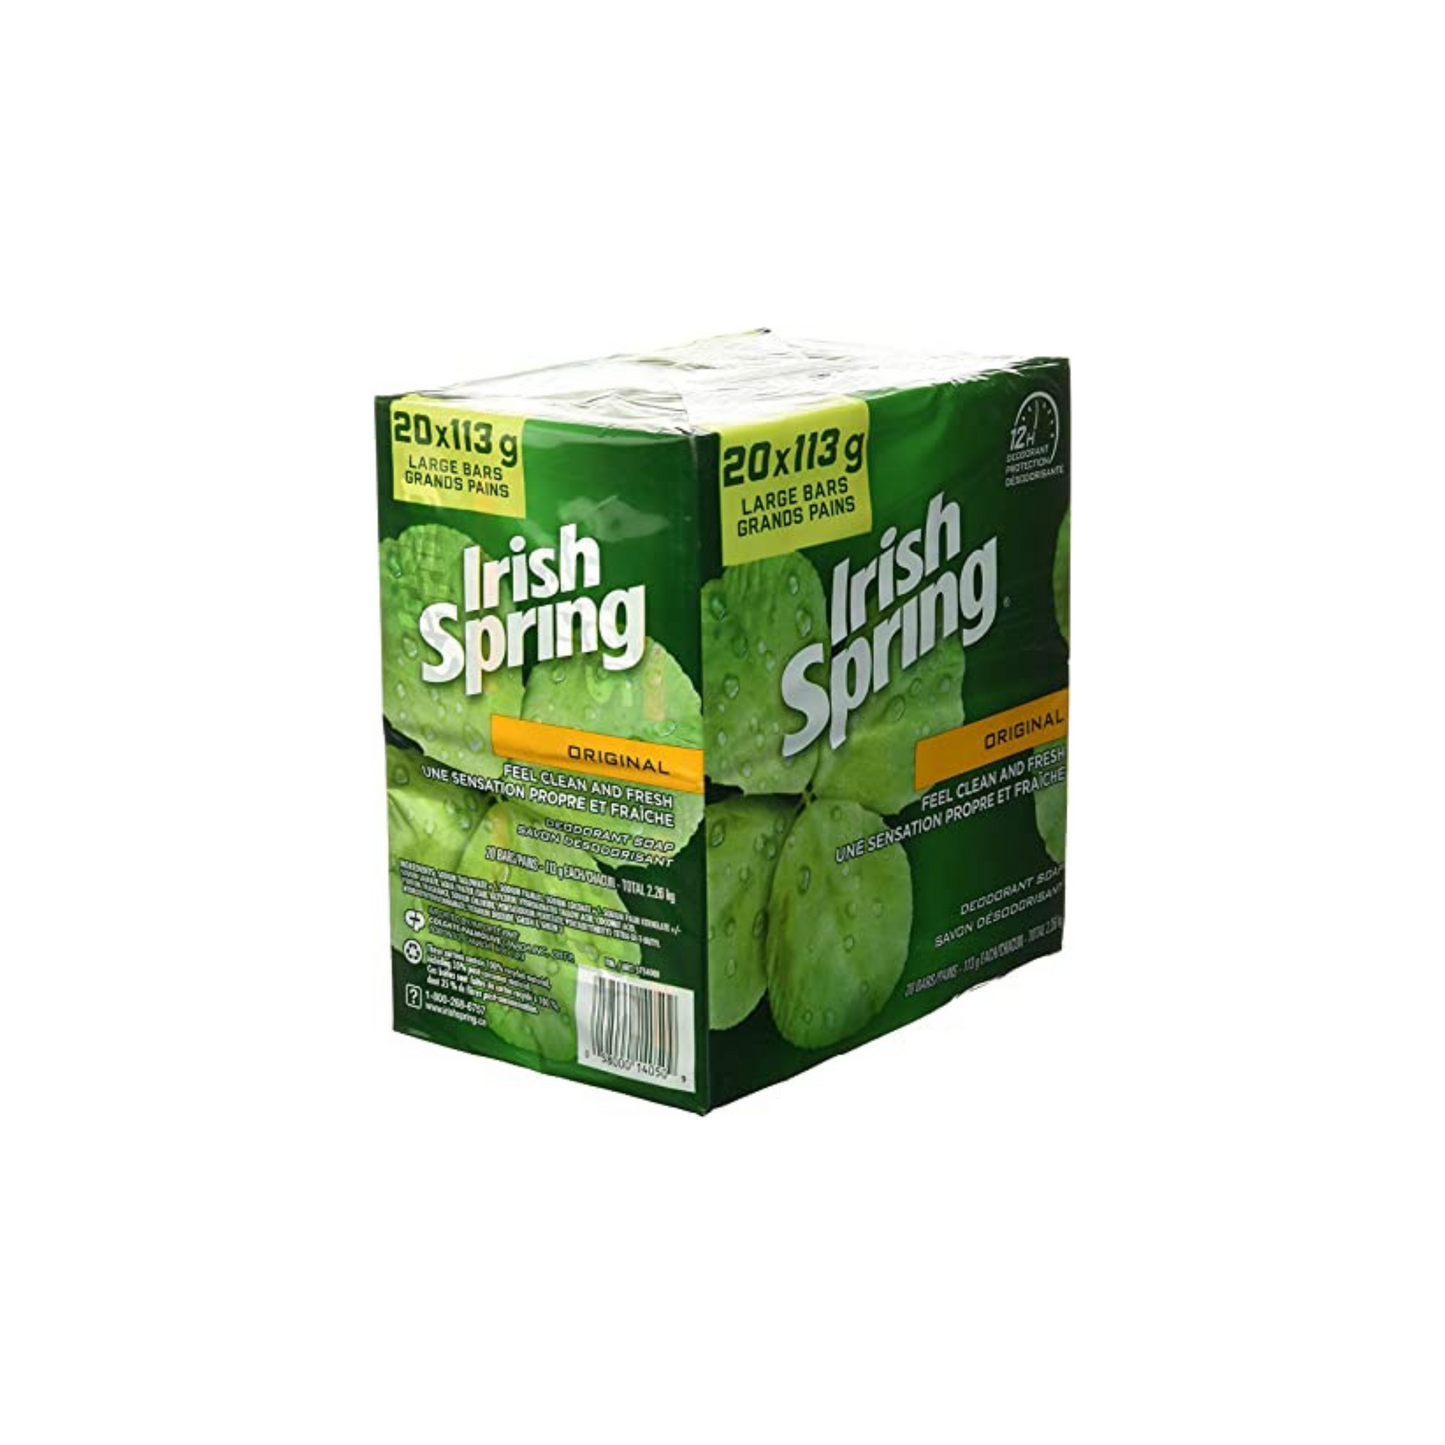 IRISH Spring Deodorant Soap (20 X 113 Gram) Net Weight, 2260 Gram